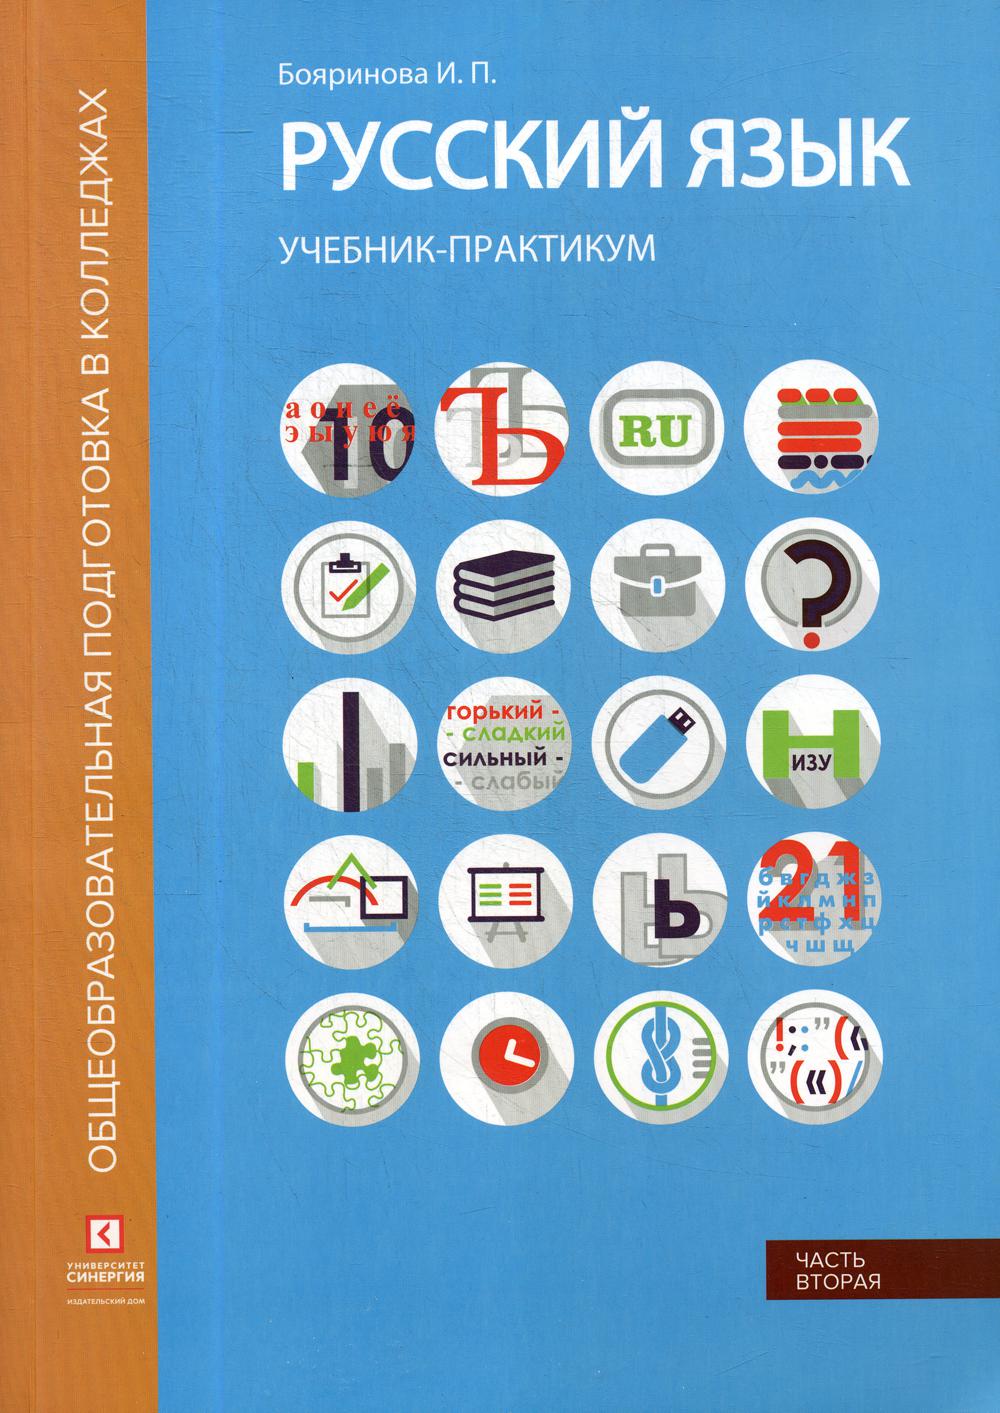 Русский язык. Синтаксис и пунктуация: Учебник-практикум. В 2 ч. Ч. 2